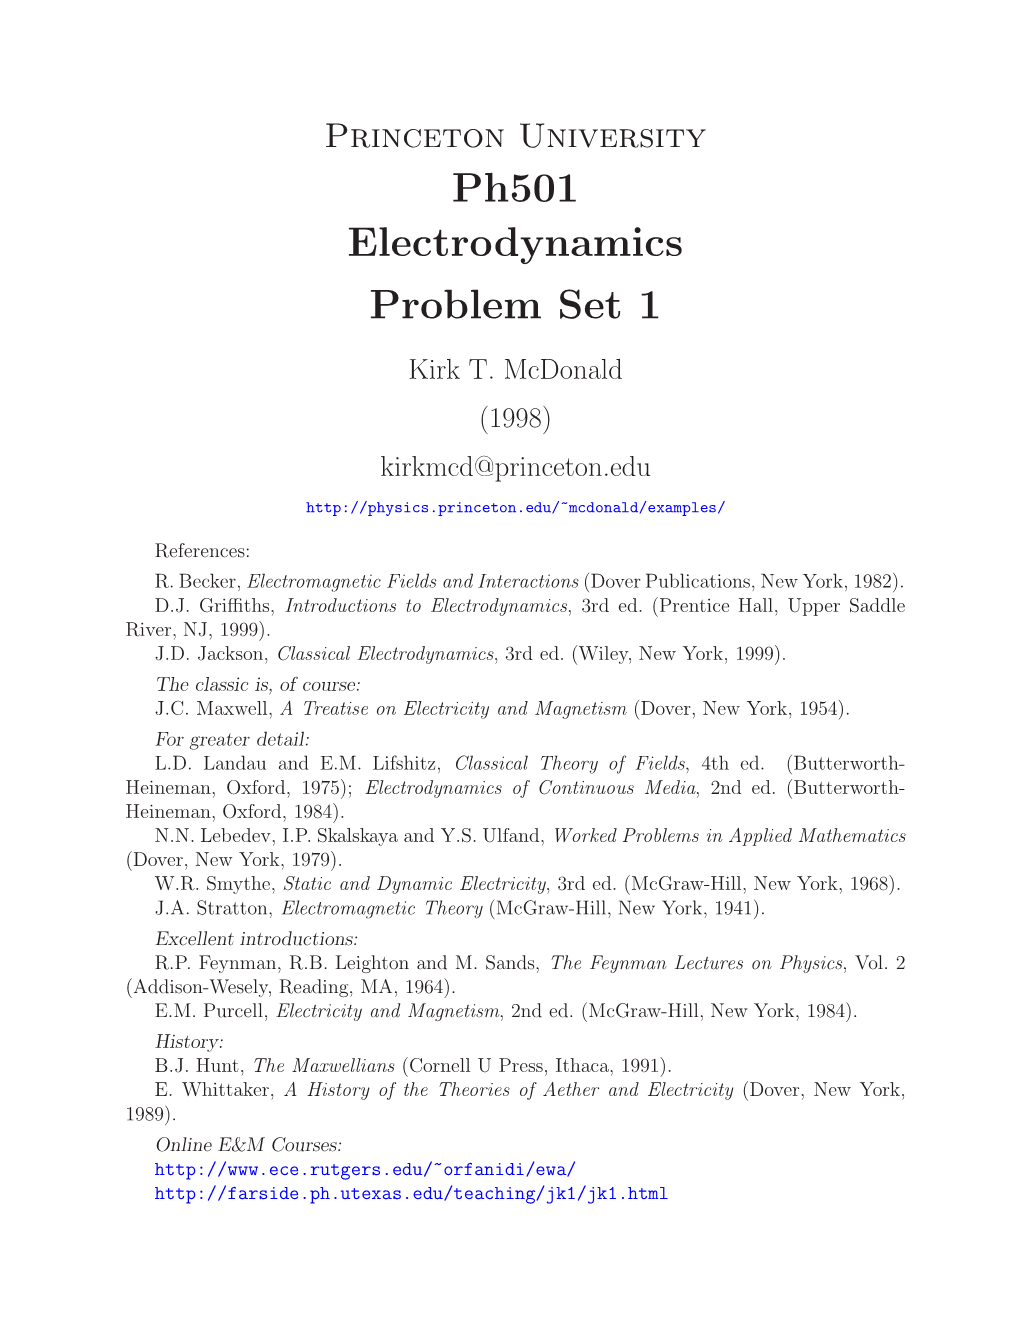 Ph501 Electrodynamics Problem Set 1